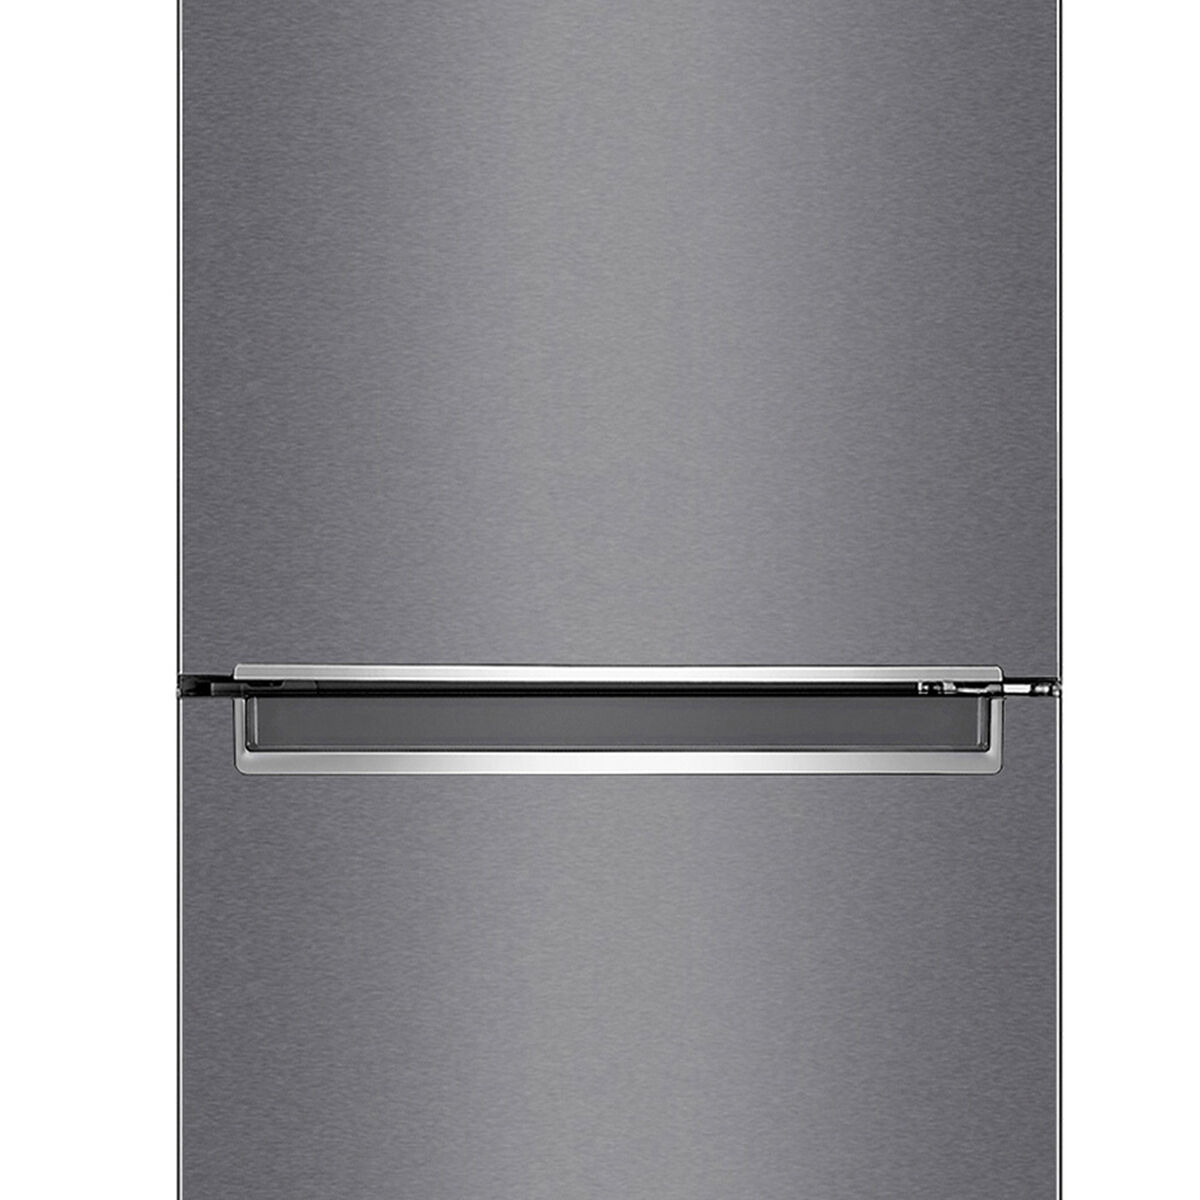 Refrigerador No Frost LG GB37MPD 341 lts.